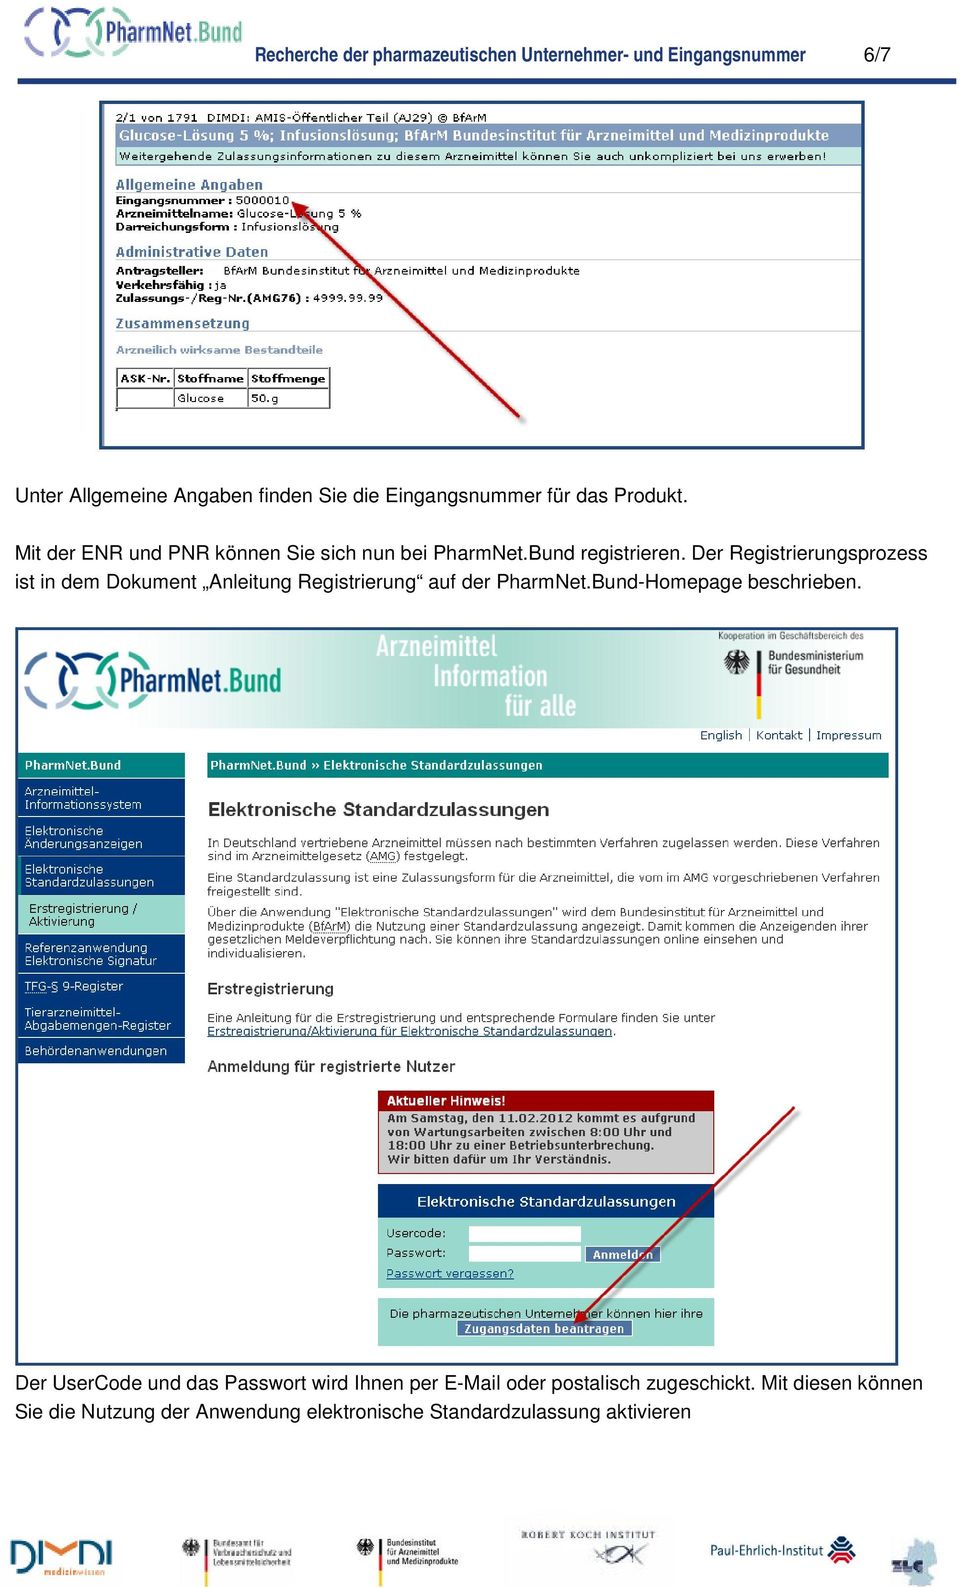 Der Registrierungsprozess ist in dem Dokument Anleitung Registrierung auf der PharmNet.Bund-Homepage beschrieben.